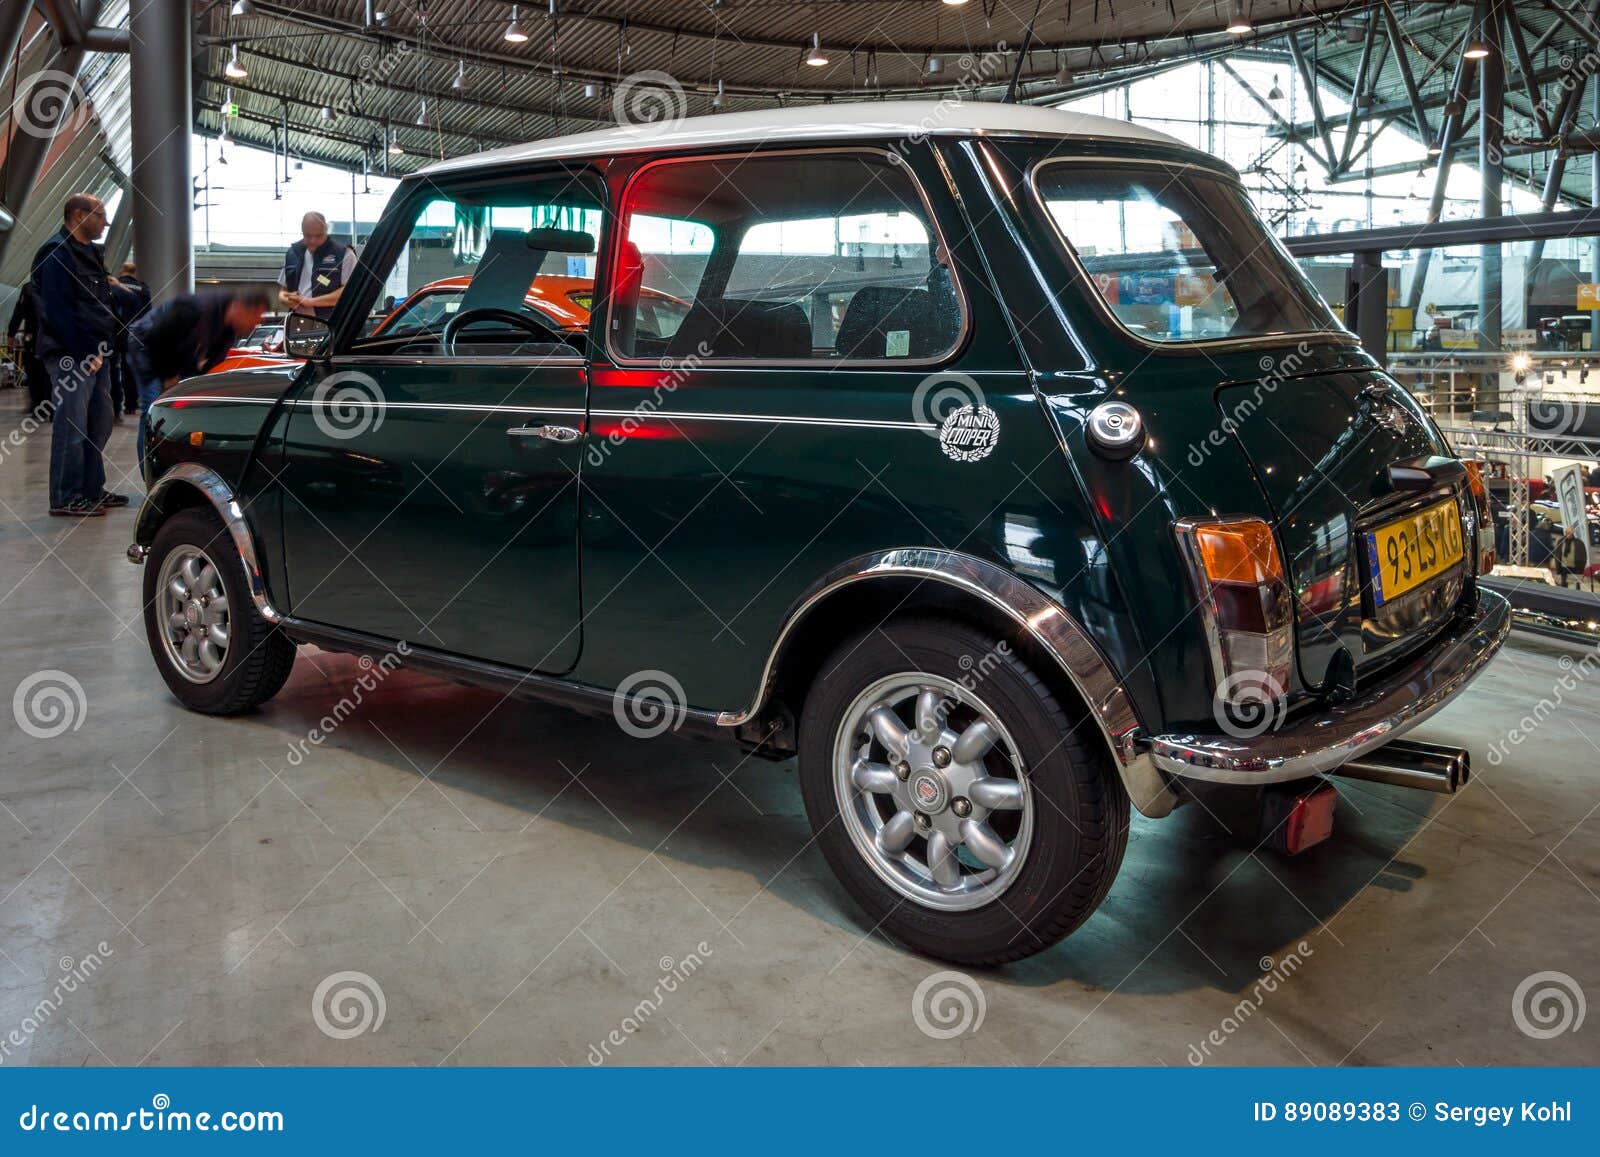 Small Economy Car Rover Mini Cooper. Editorial Stock Photo - Image of ...